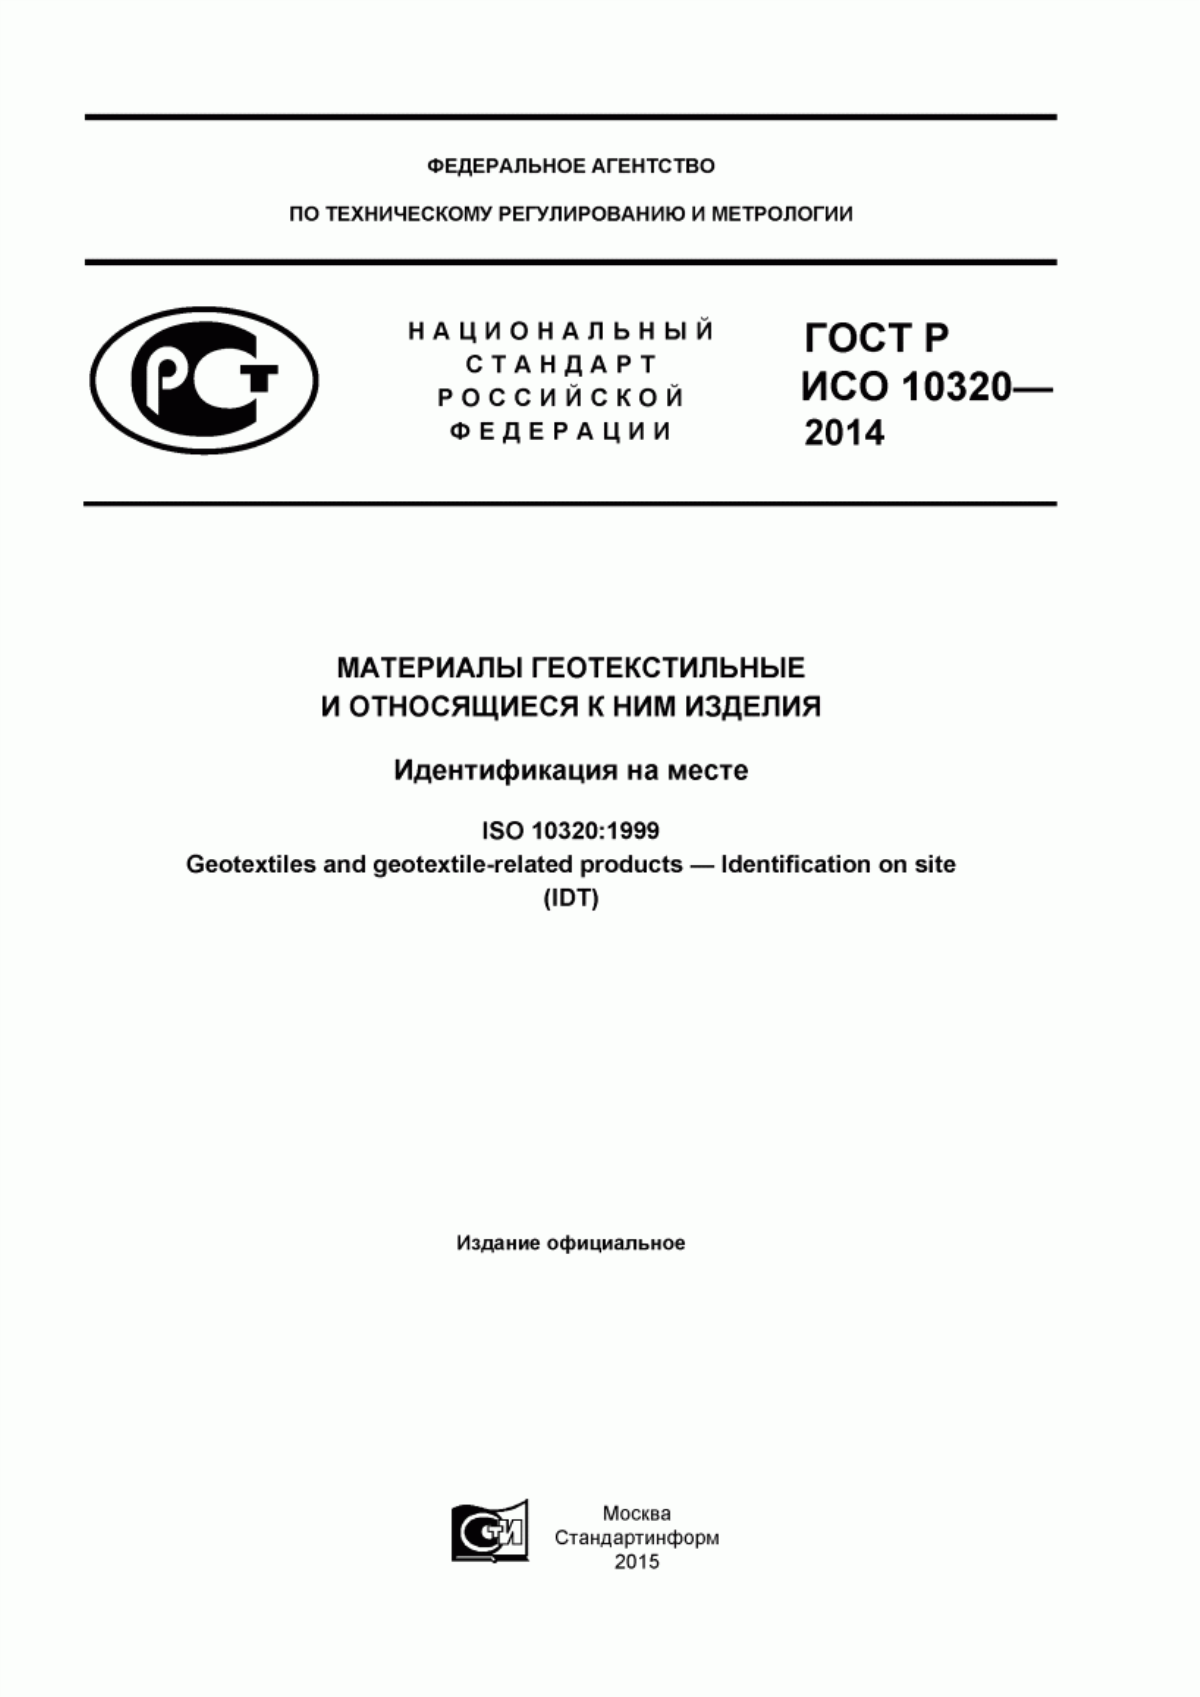 ГОСТ Р ИСО 10320-2014 Материалы геотекстильные и относящиеся к ним изделия. Идентификация на месте